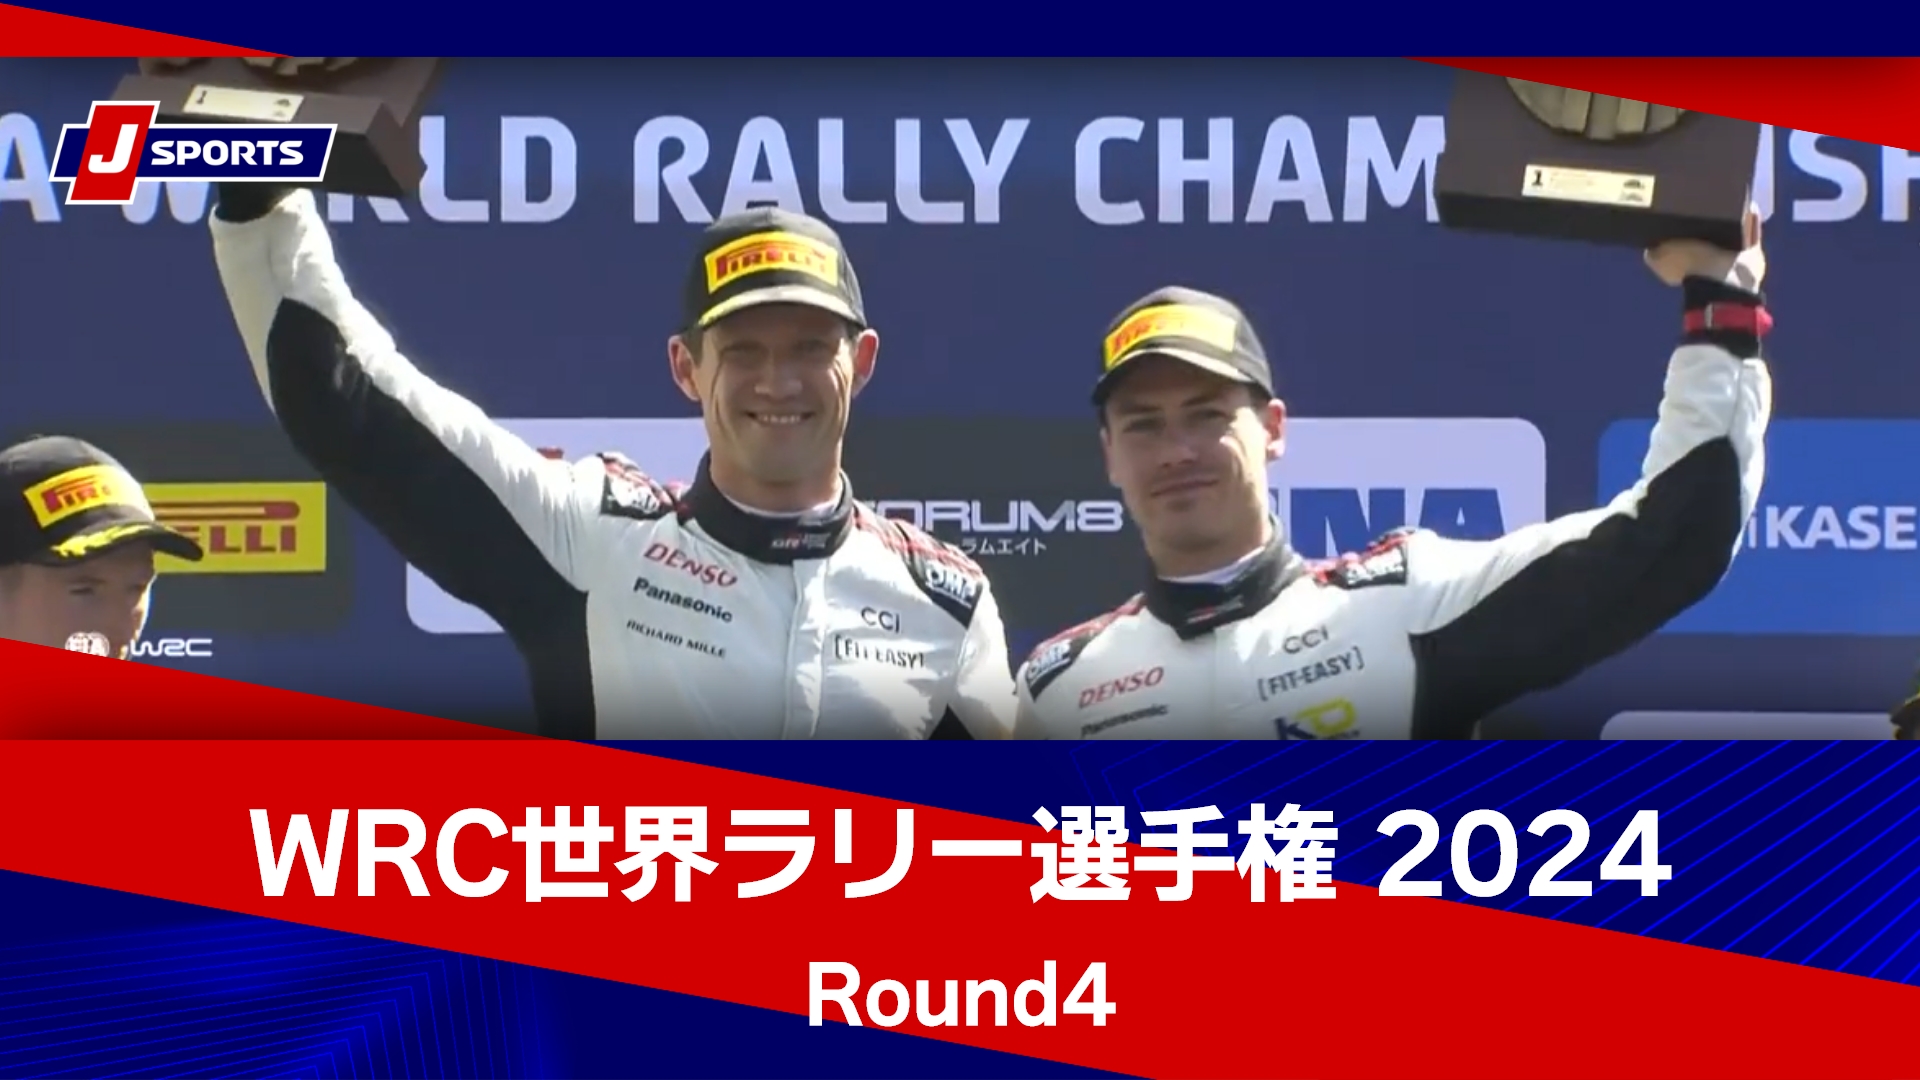 【ハイライト】WRC世界ラリー選手権 2024 Round4 クロアチア・ラリー パワーステージ【SS20】